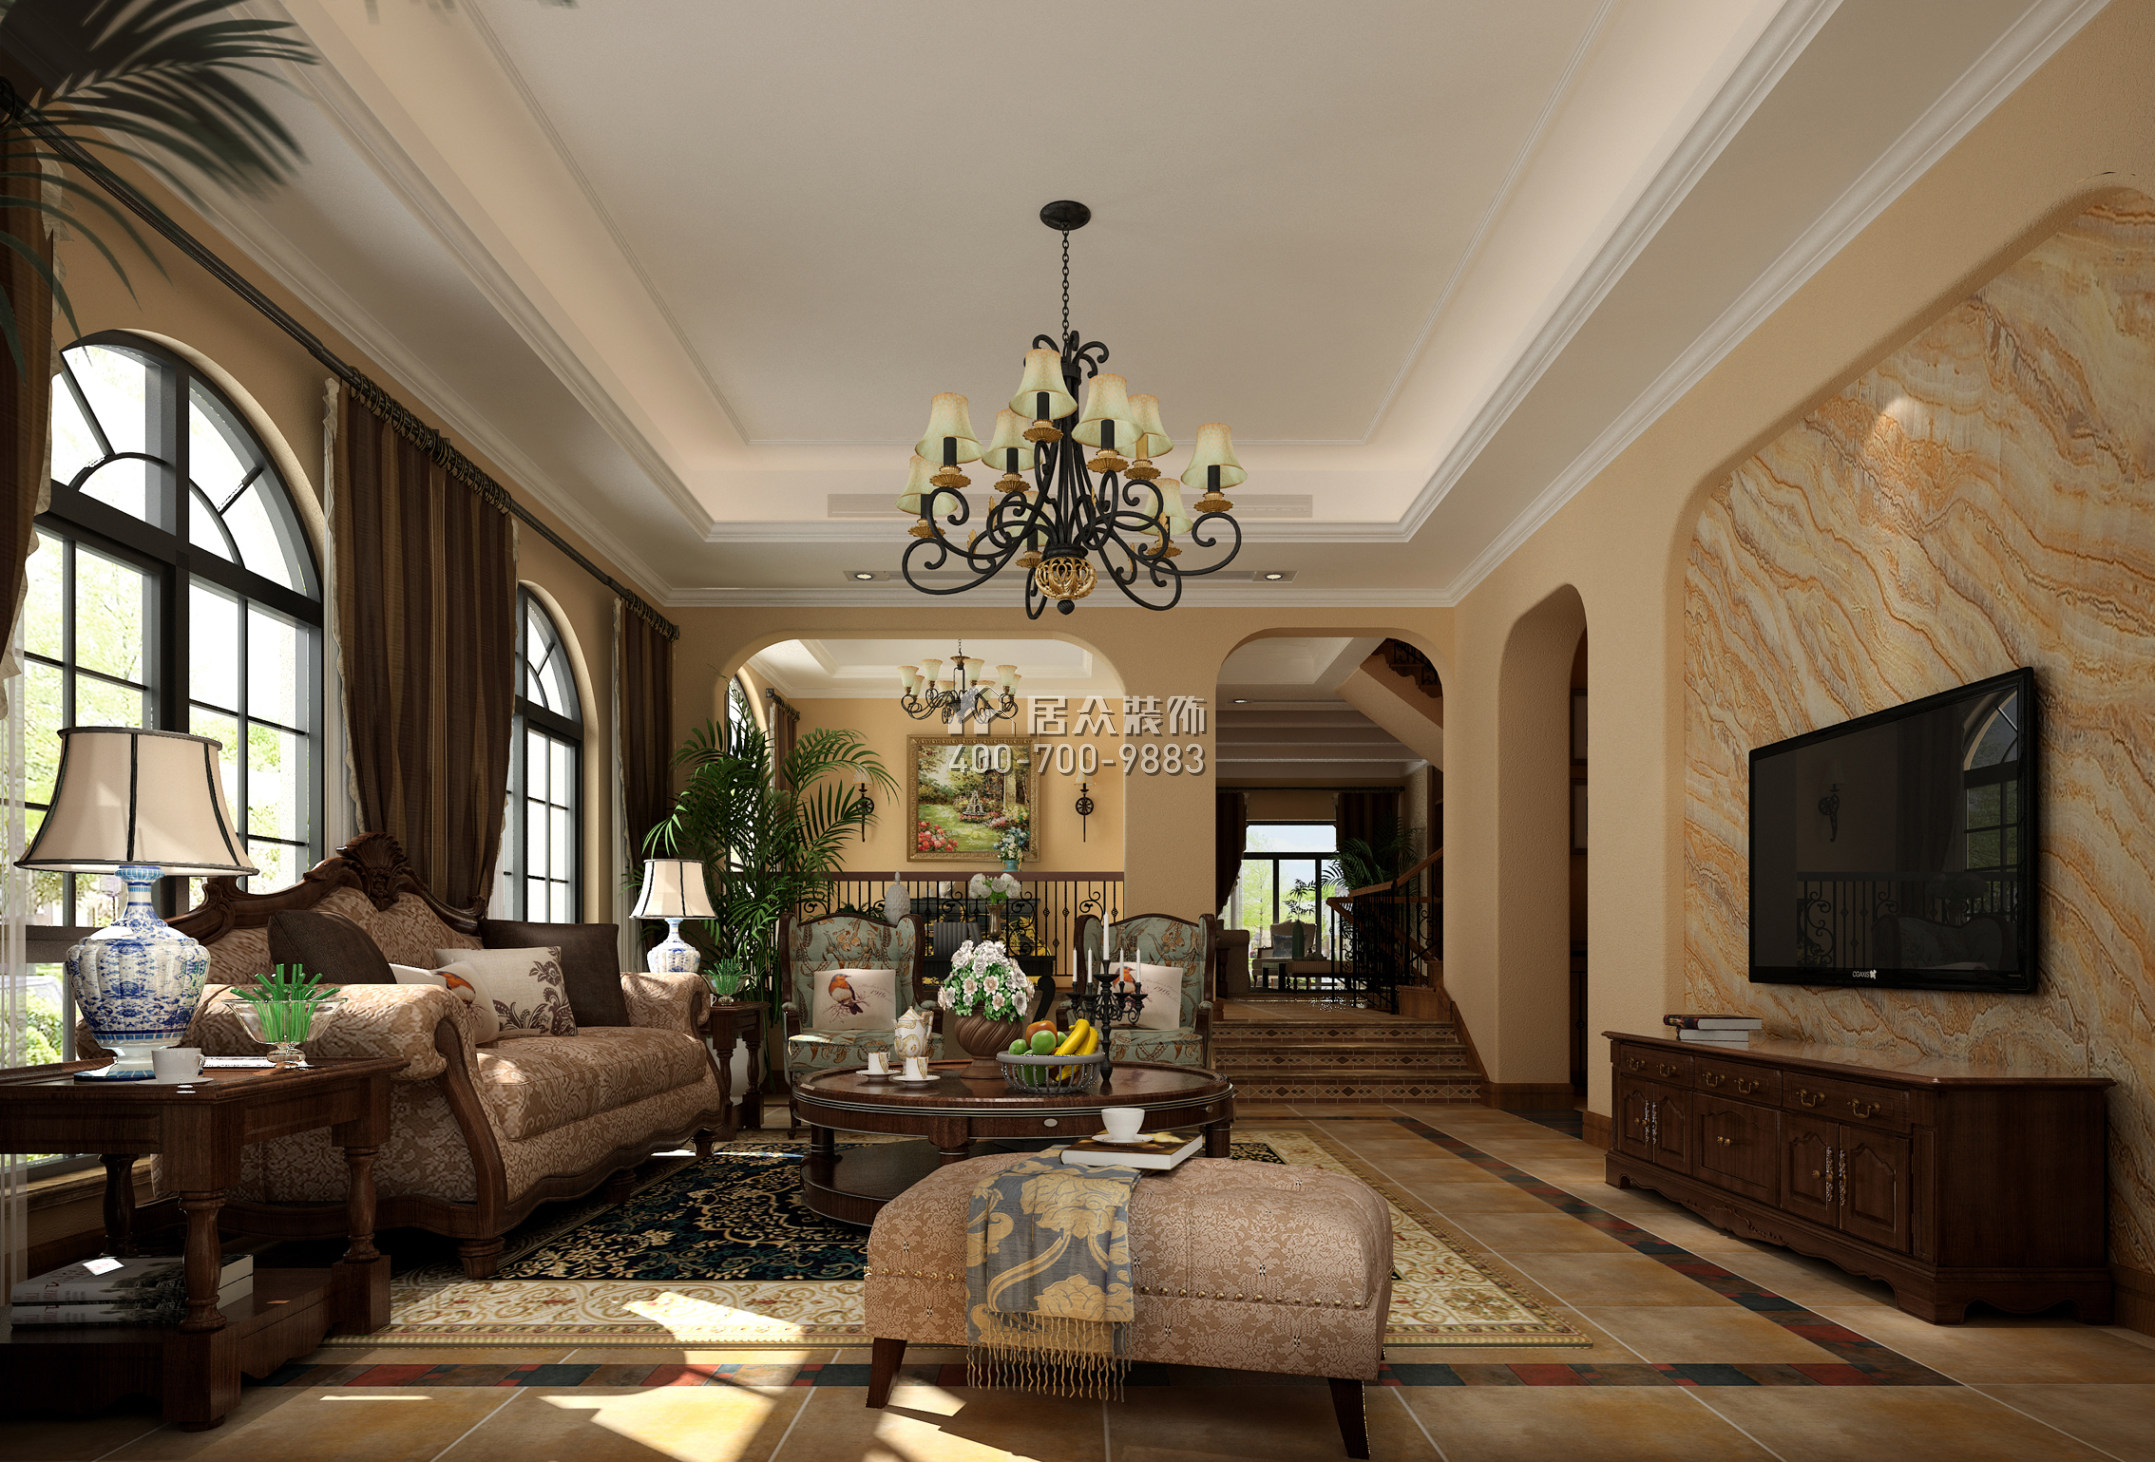 水印加州650平方米美式風格別墅戶型客廳裝修效果圖